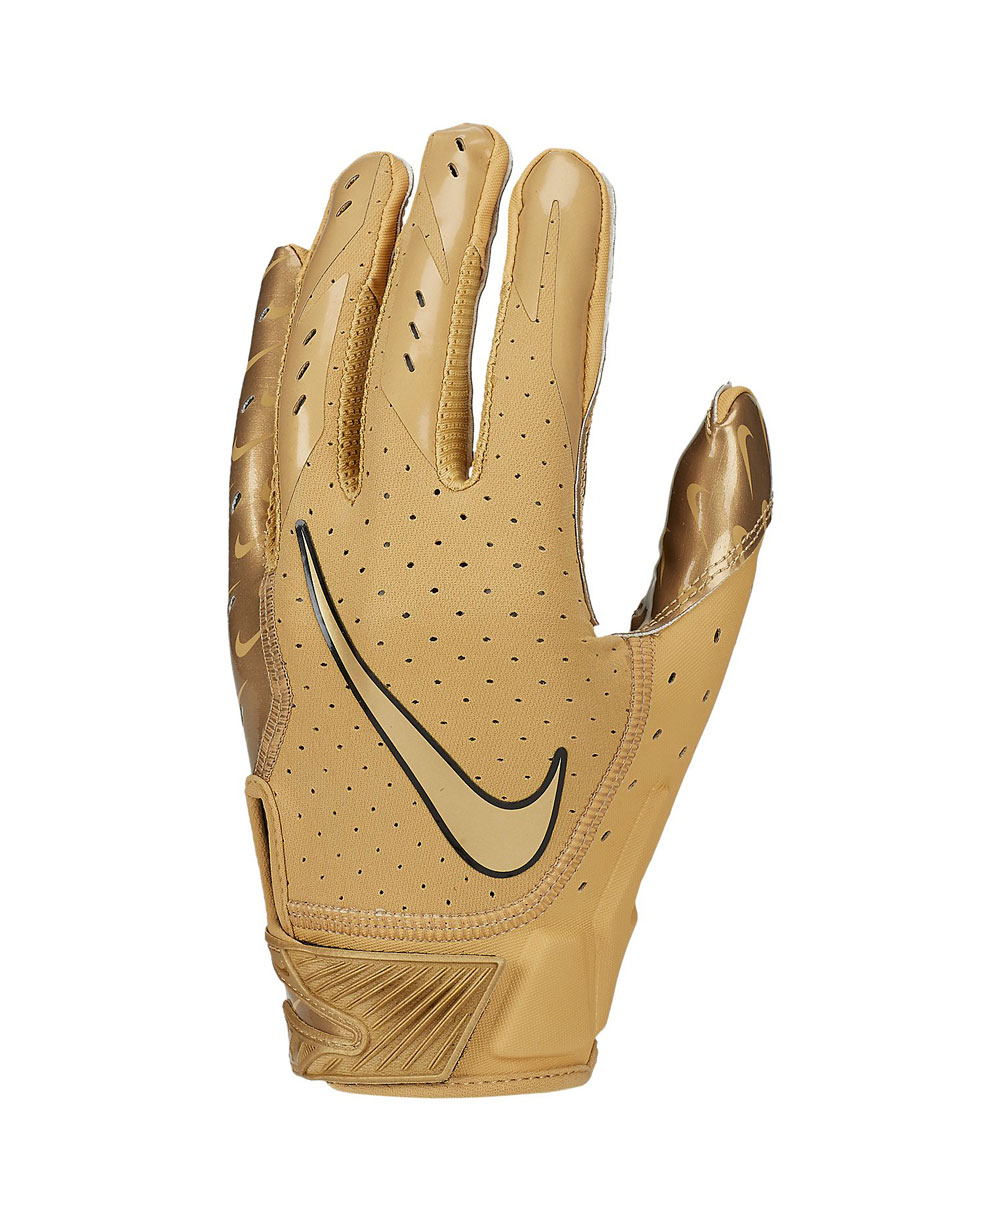 Nike Vapor Jet 5 Men's Football Gloves Gold